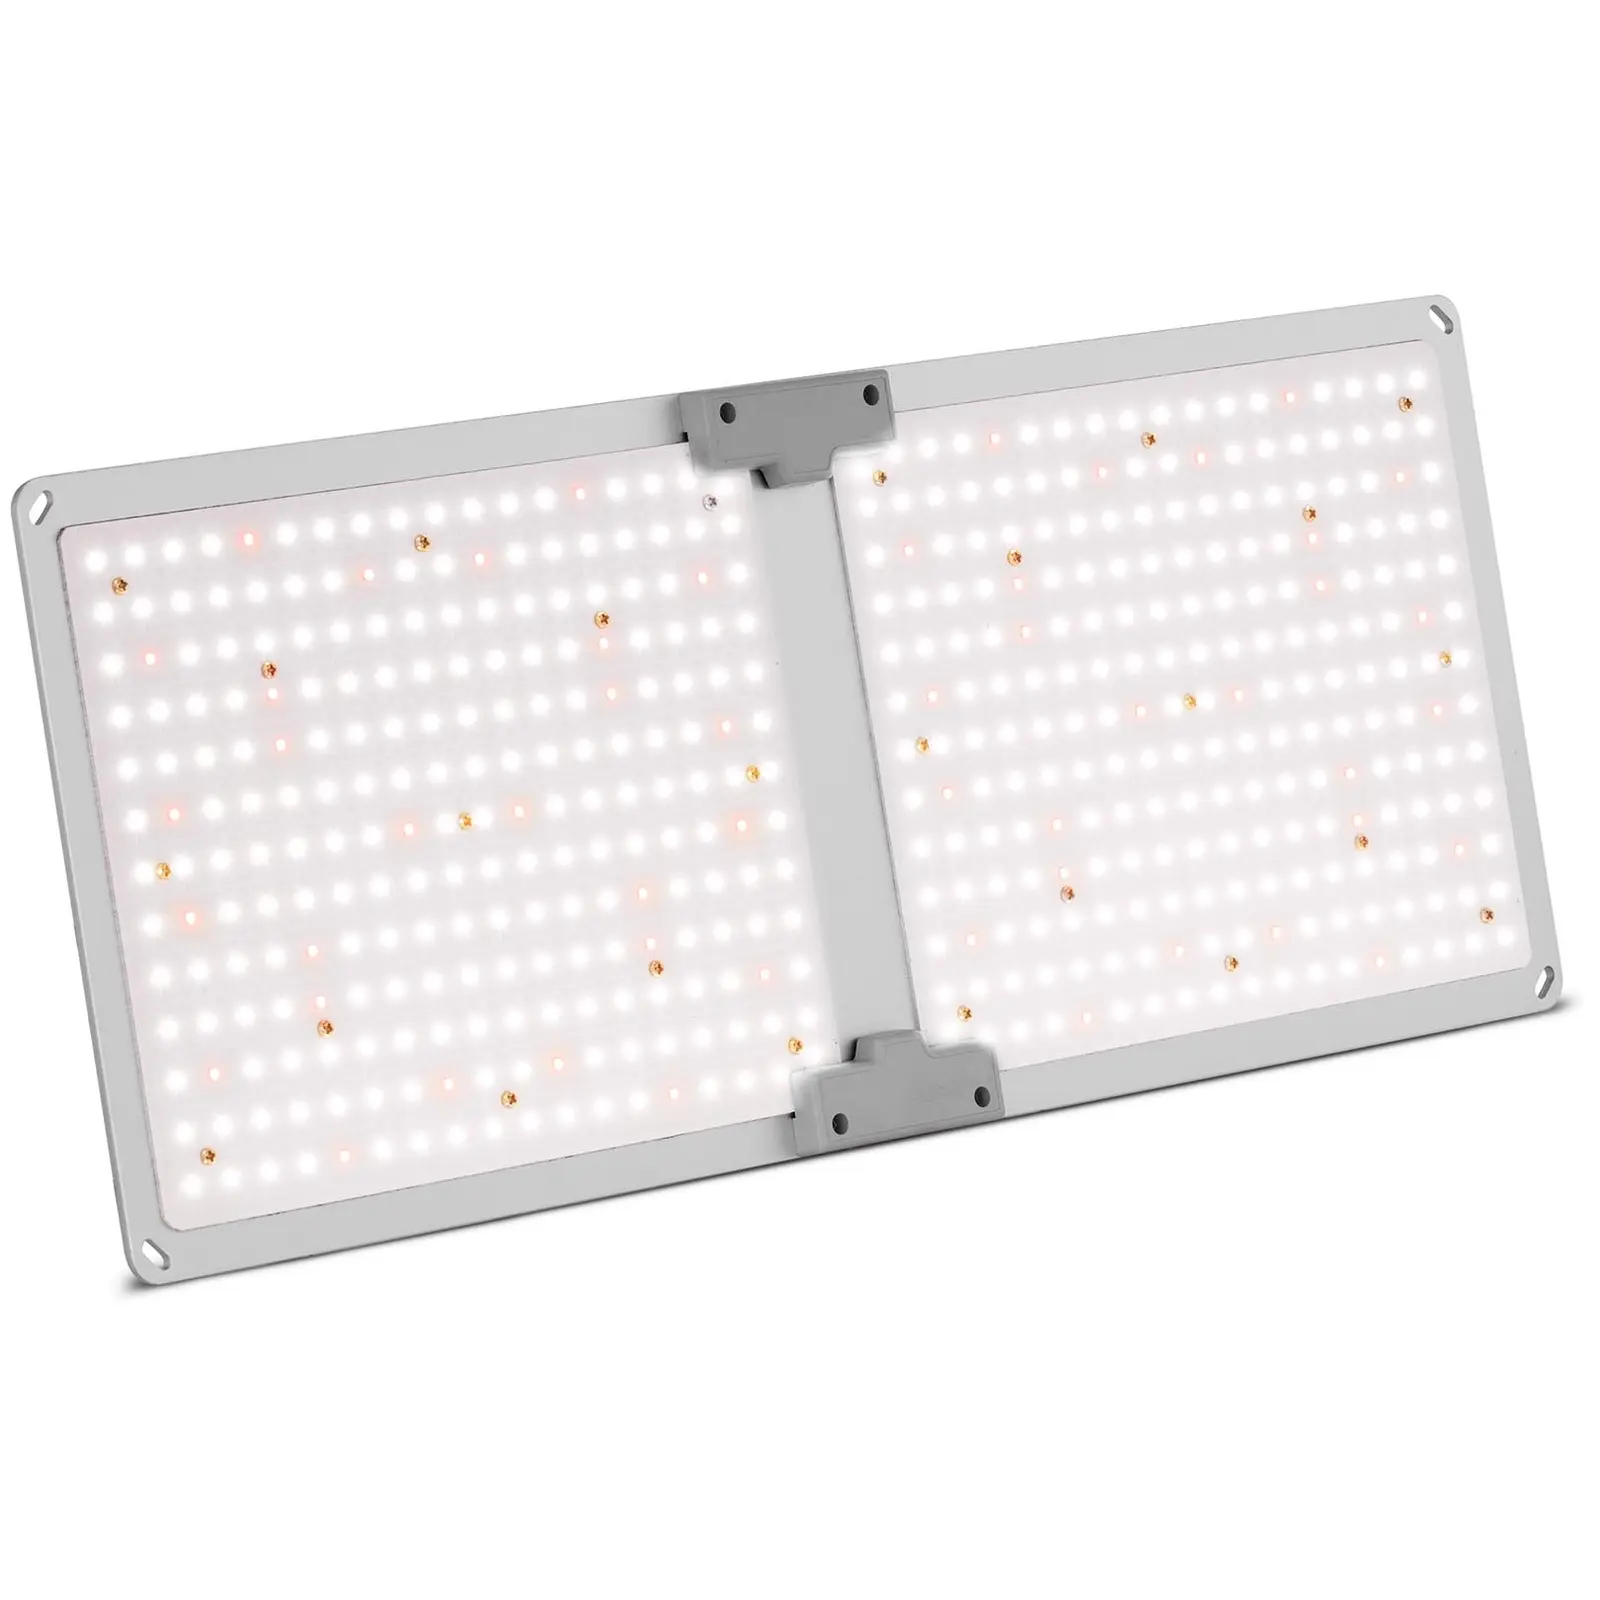 LED Grow Light - Full spectrum - 2,000 W - 468 LEDs - 20,000 lumens